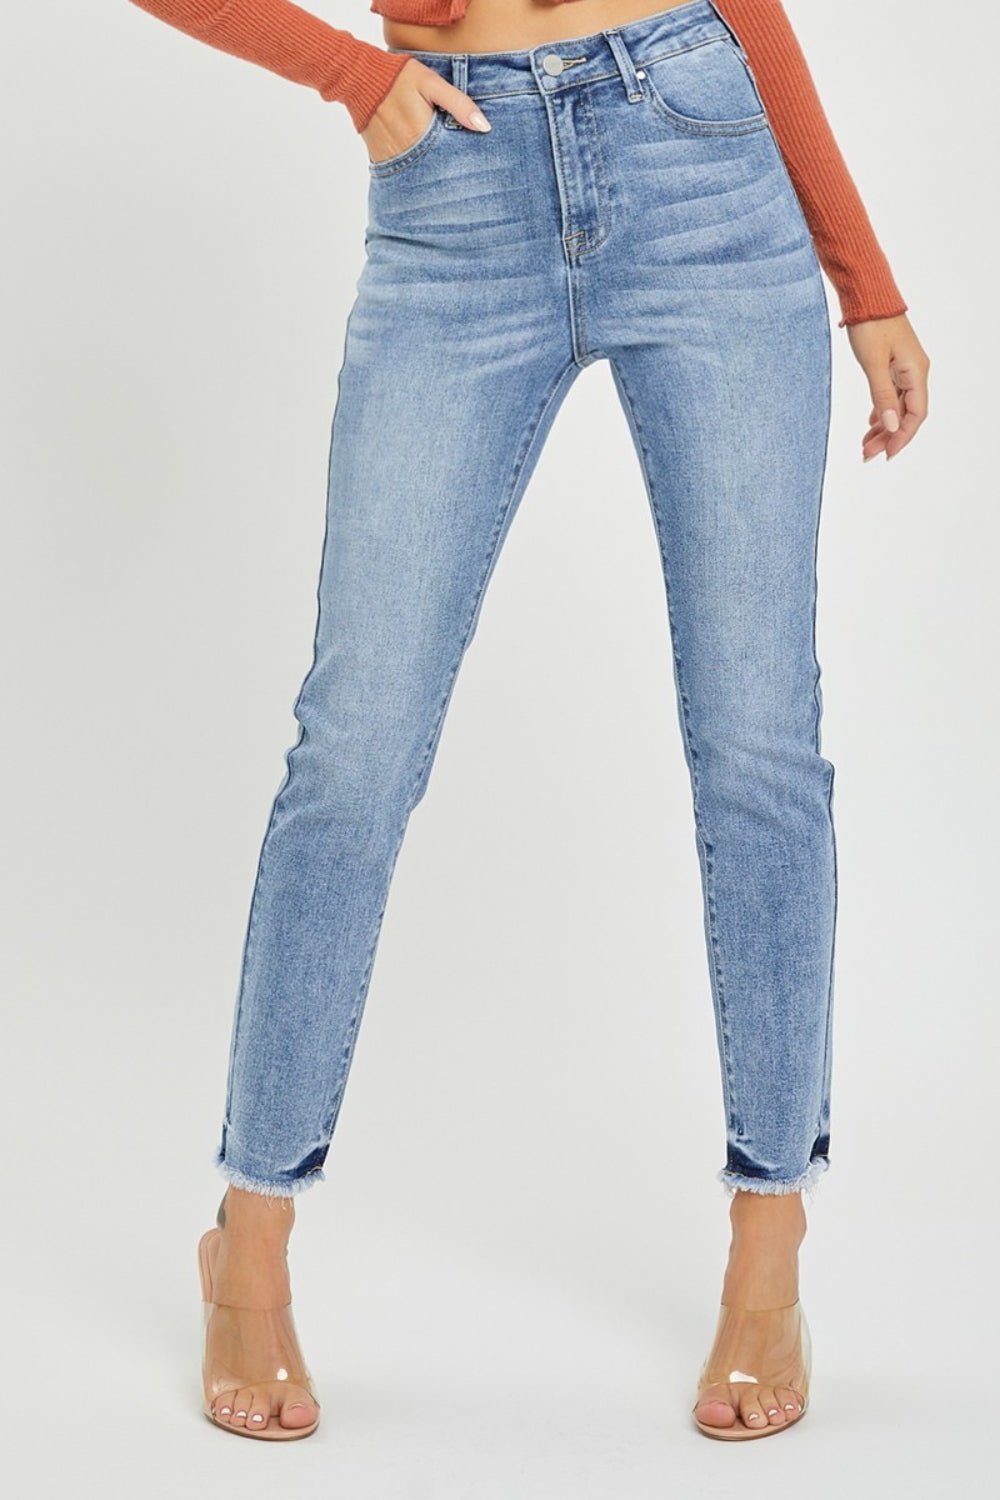 Medium Wash High Rise Frayed Hem Skinny JeansJeansRISEN